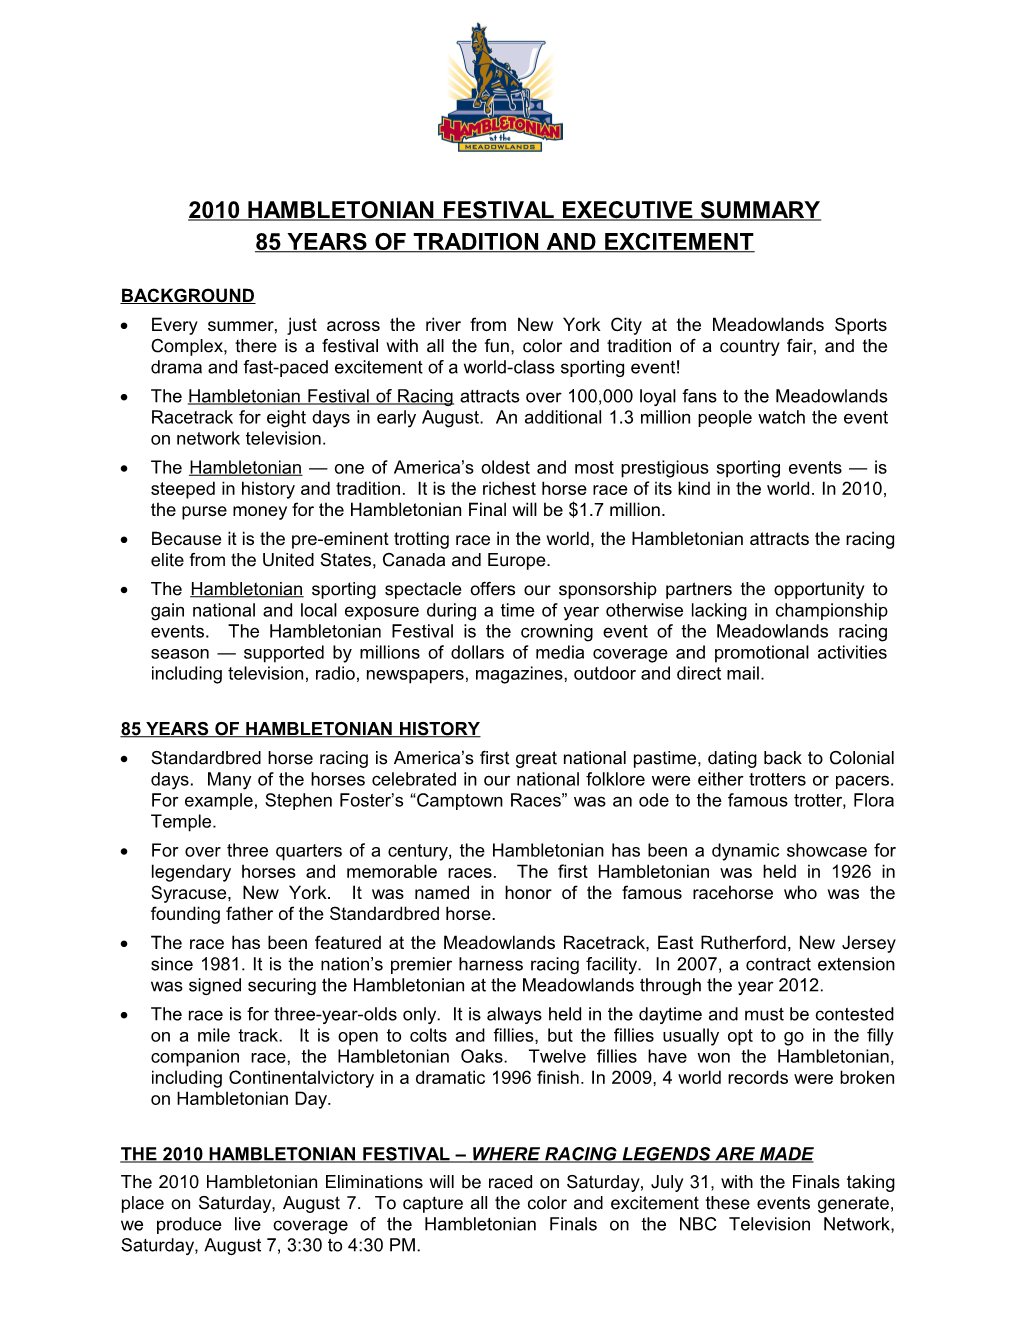 2010 Hambletonian Festival Executive Summary